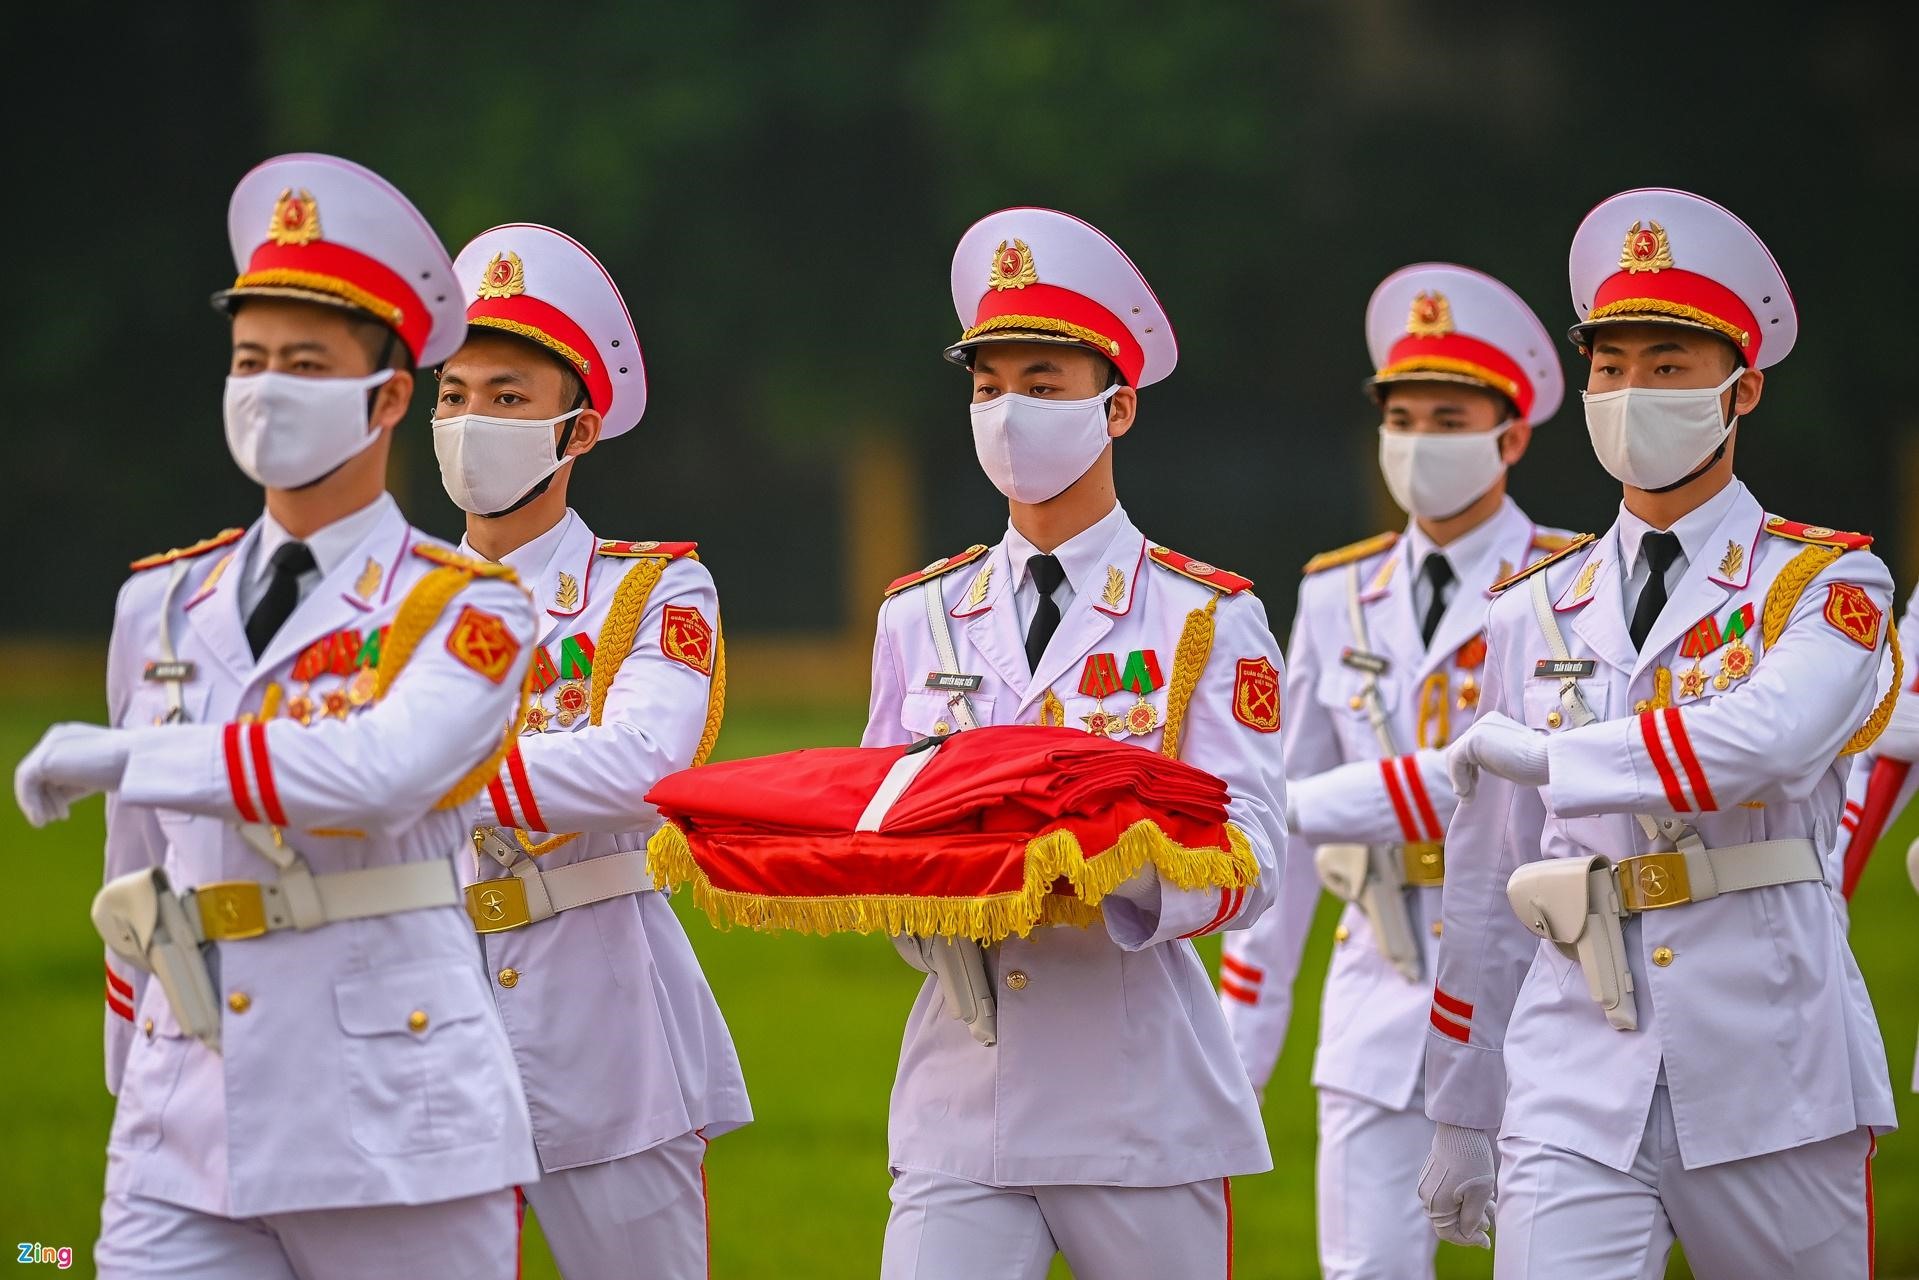 Ý tưởng thực hiện nghi lễ trên quảng trường được Chính phủ phê duyệt vào 19/5/2001 nhân dịp dịp kỷ niệm 111 năm Ngày sinh Chủ tịch Hồ Chí Minh. 2021 là năm thứ 20 nghi lễ này được thực hiện.